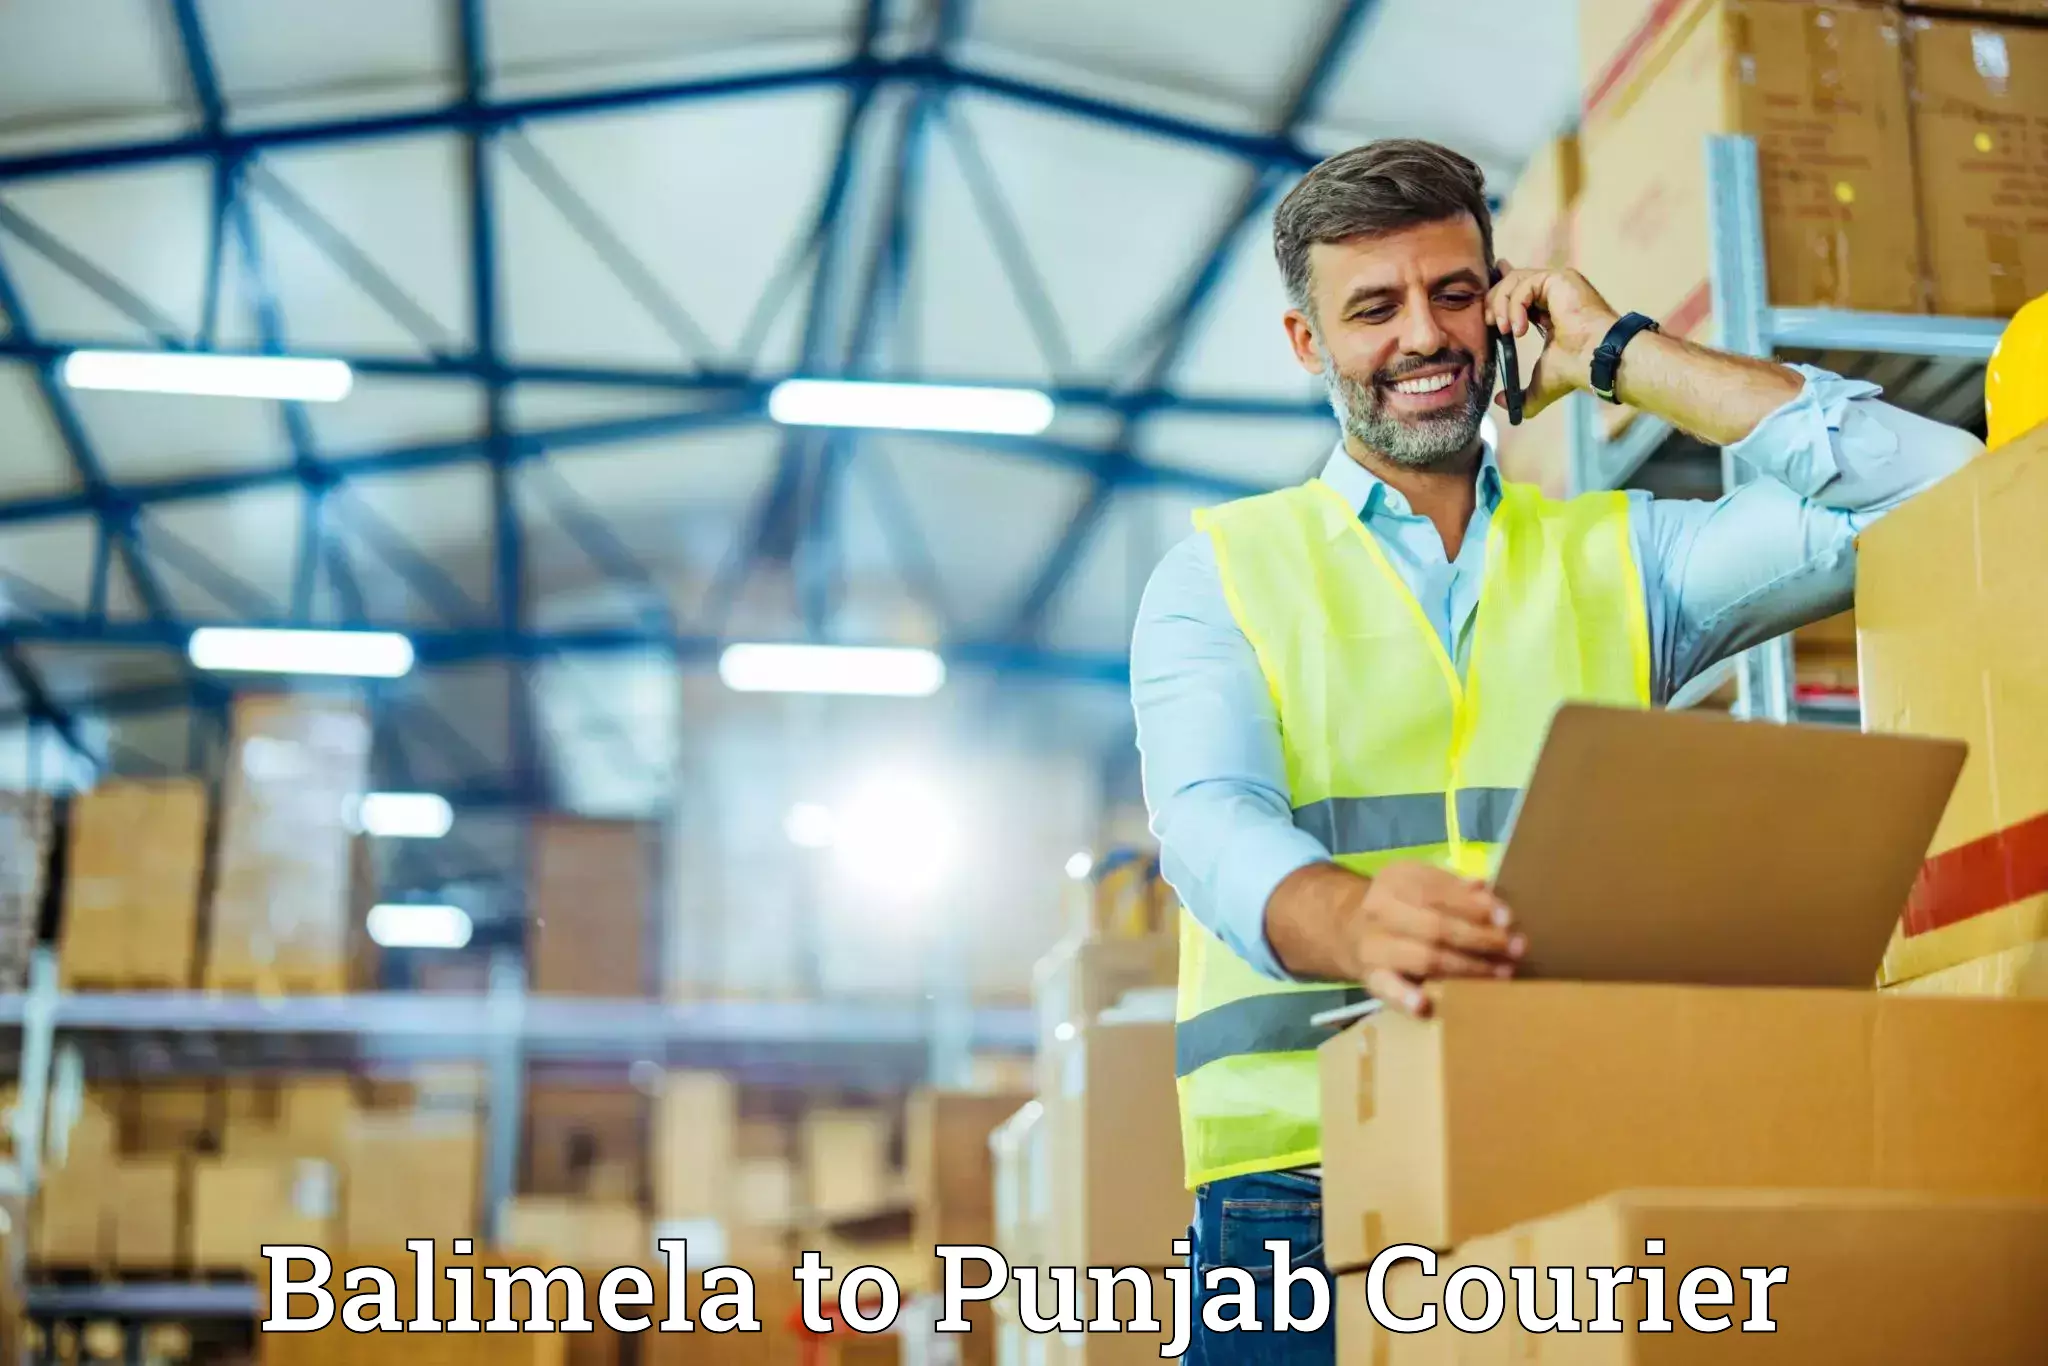 Furniture delivery service Balimela to Punjab